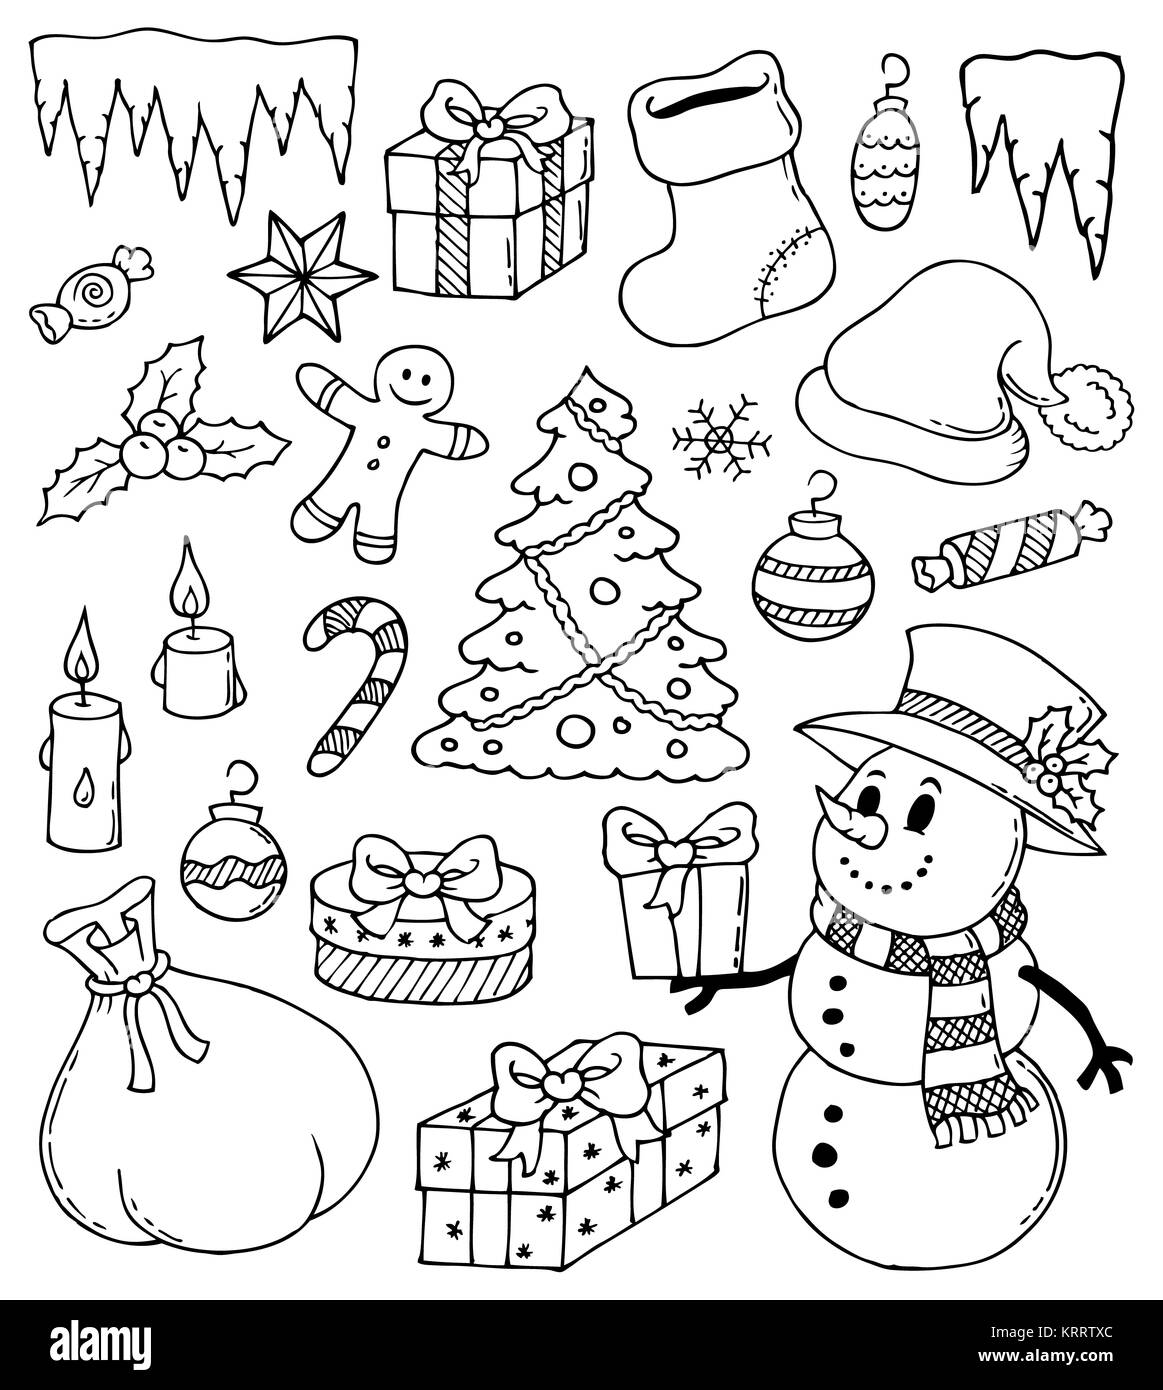 Disegni Di Natale Stilizzati.Natale Disegni Stilizzati 3 Foto Stock Alamy